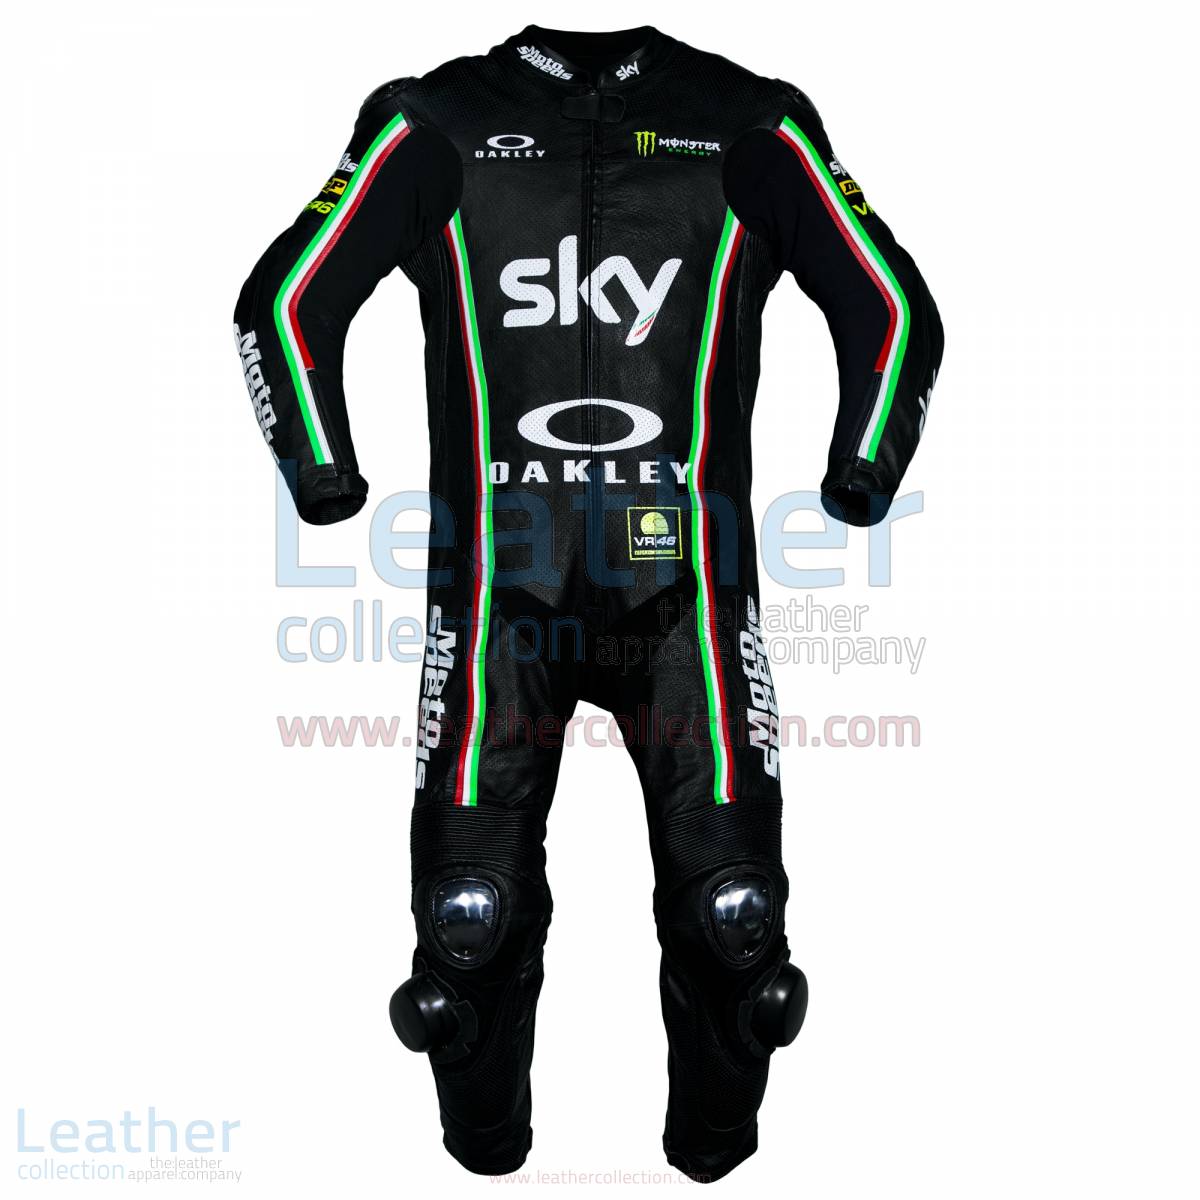 VR46 Riders Academy Sky Team 2017 Race Suit – KTM Suit